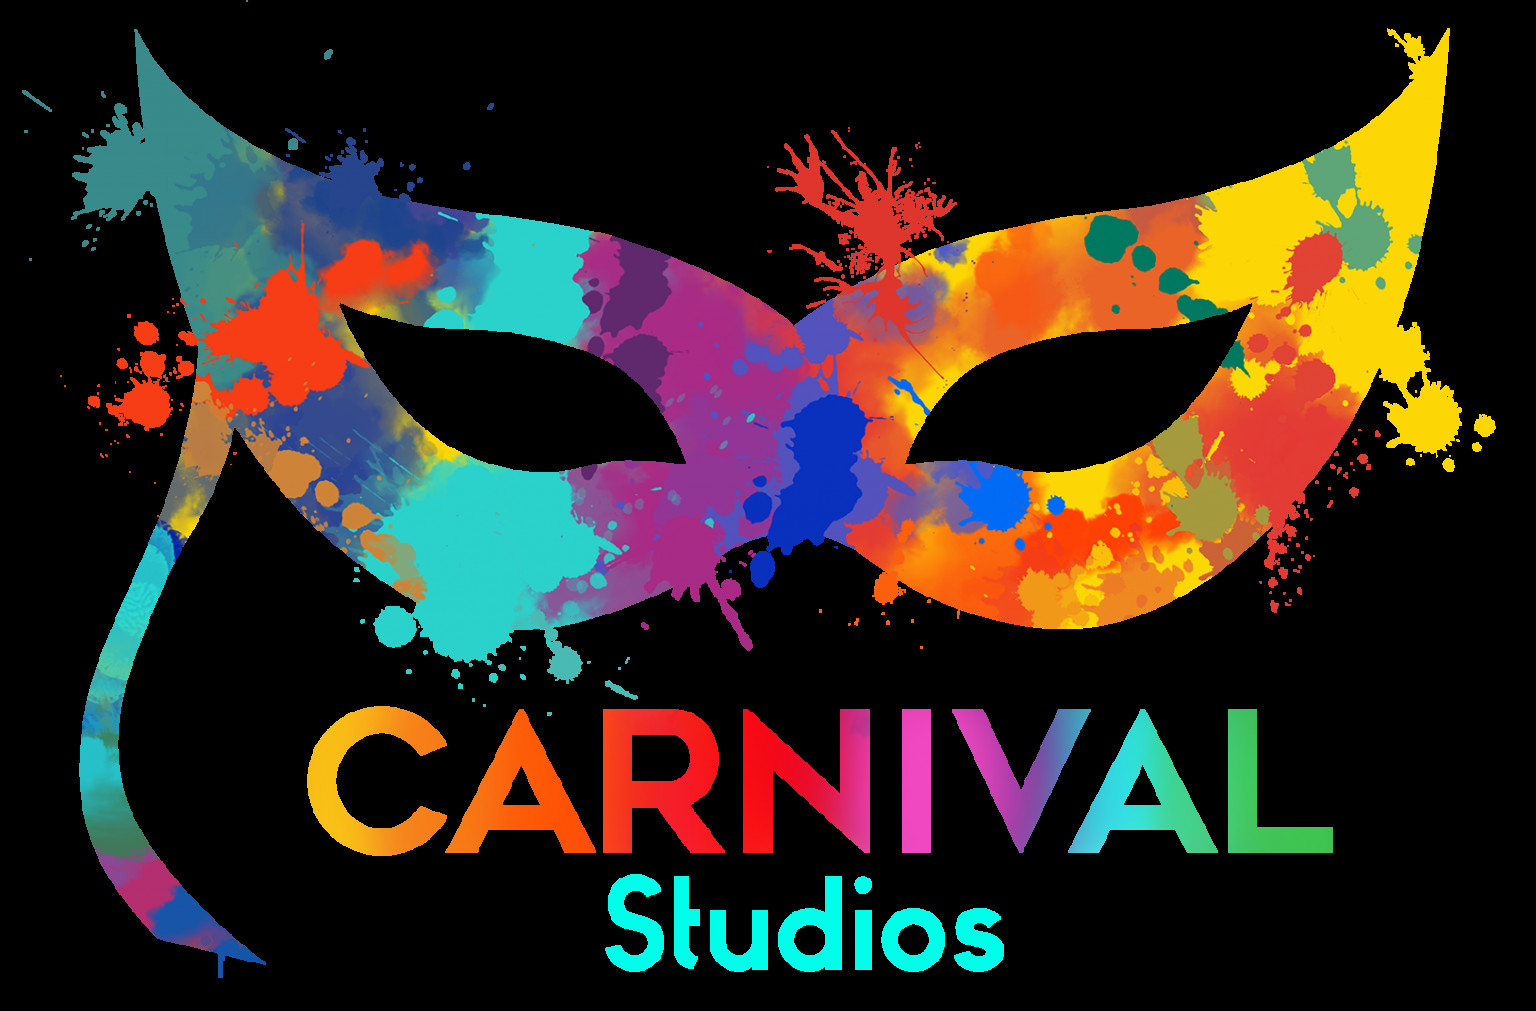 Carnival Studios salem